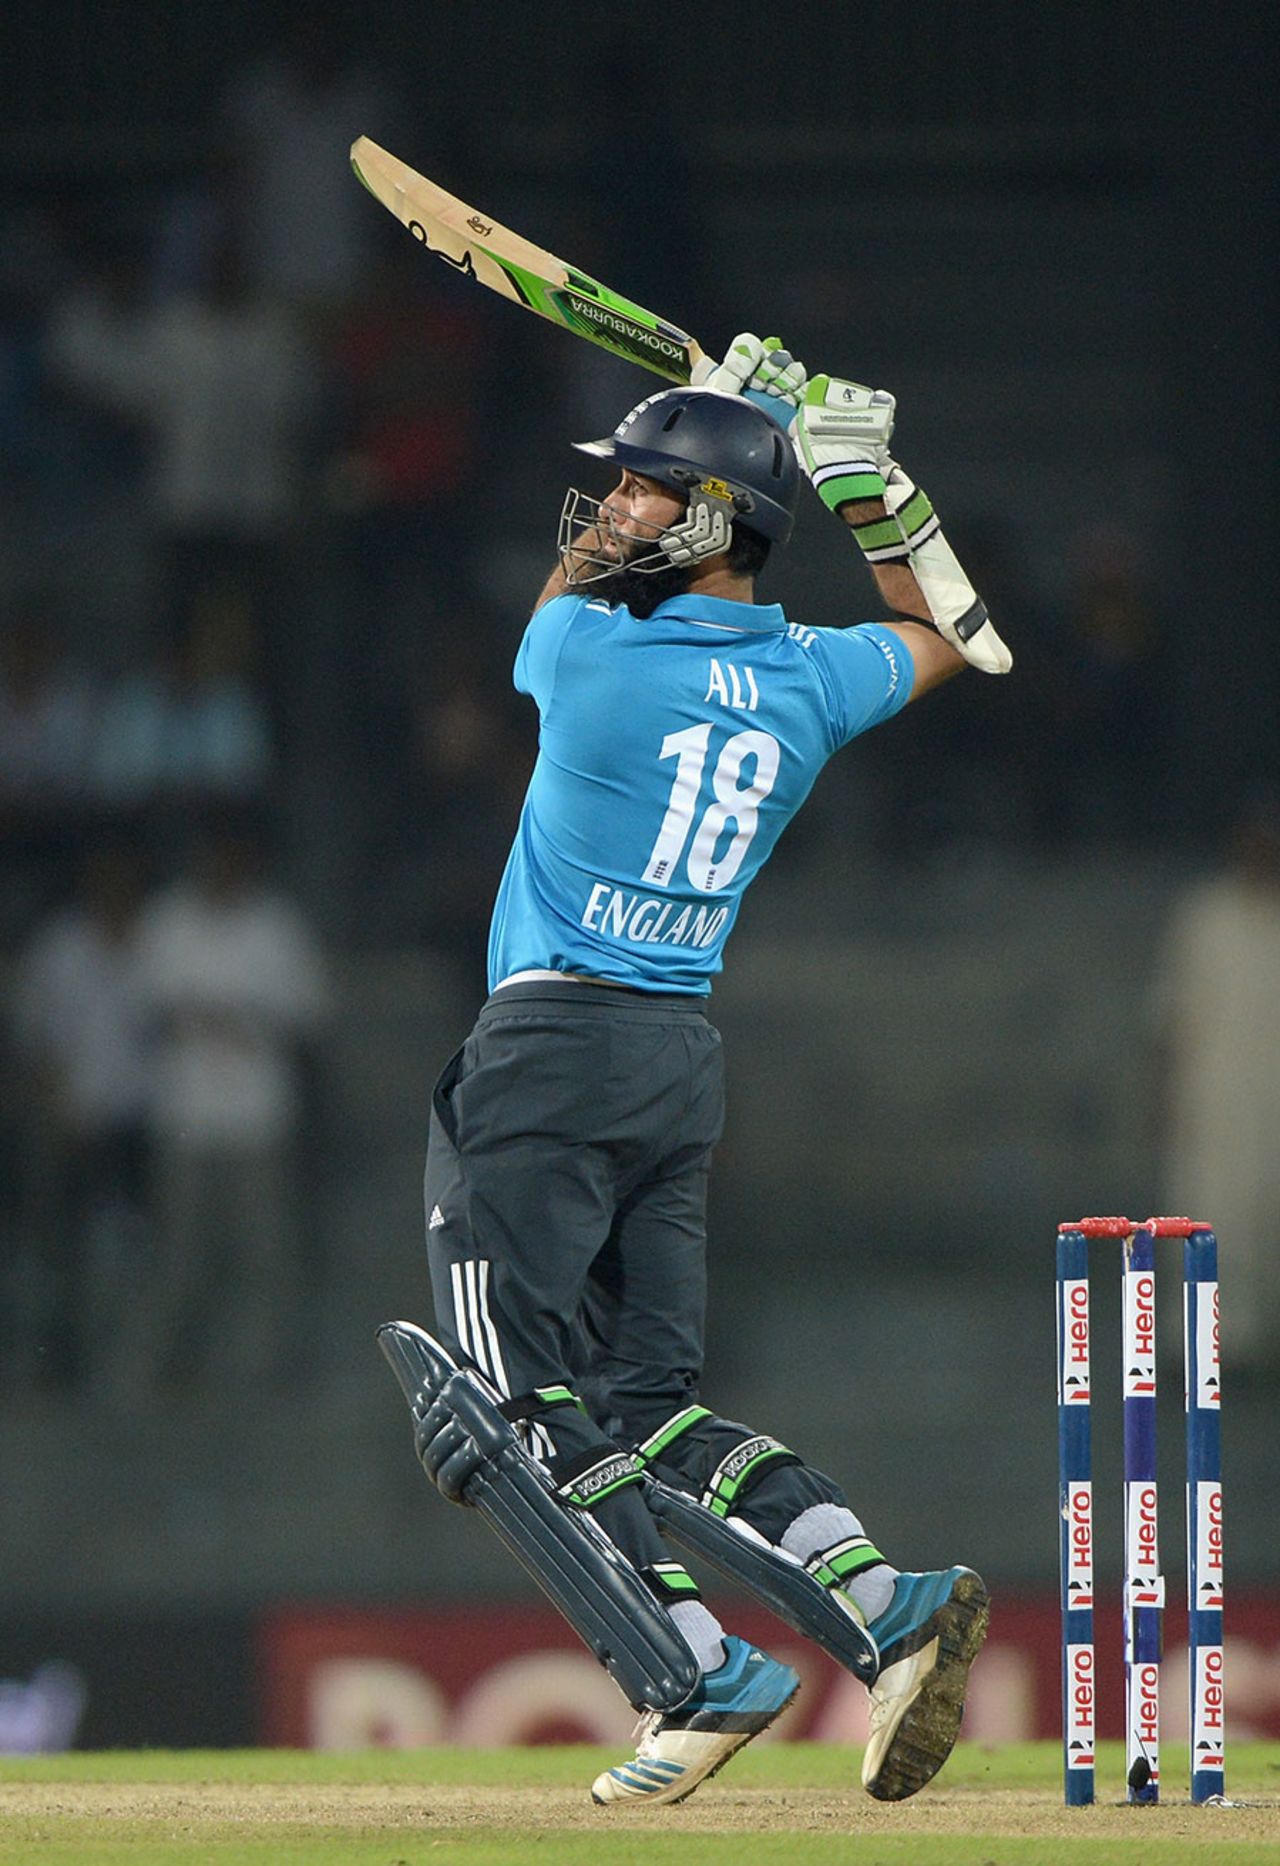 Moeen Ali was in fluent touch, Sri Lanka v England, 1st ODI, Colombo, November 26, 2014